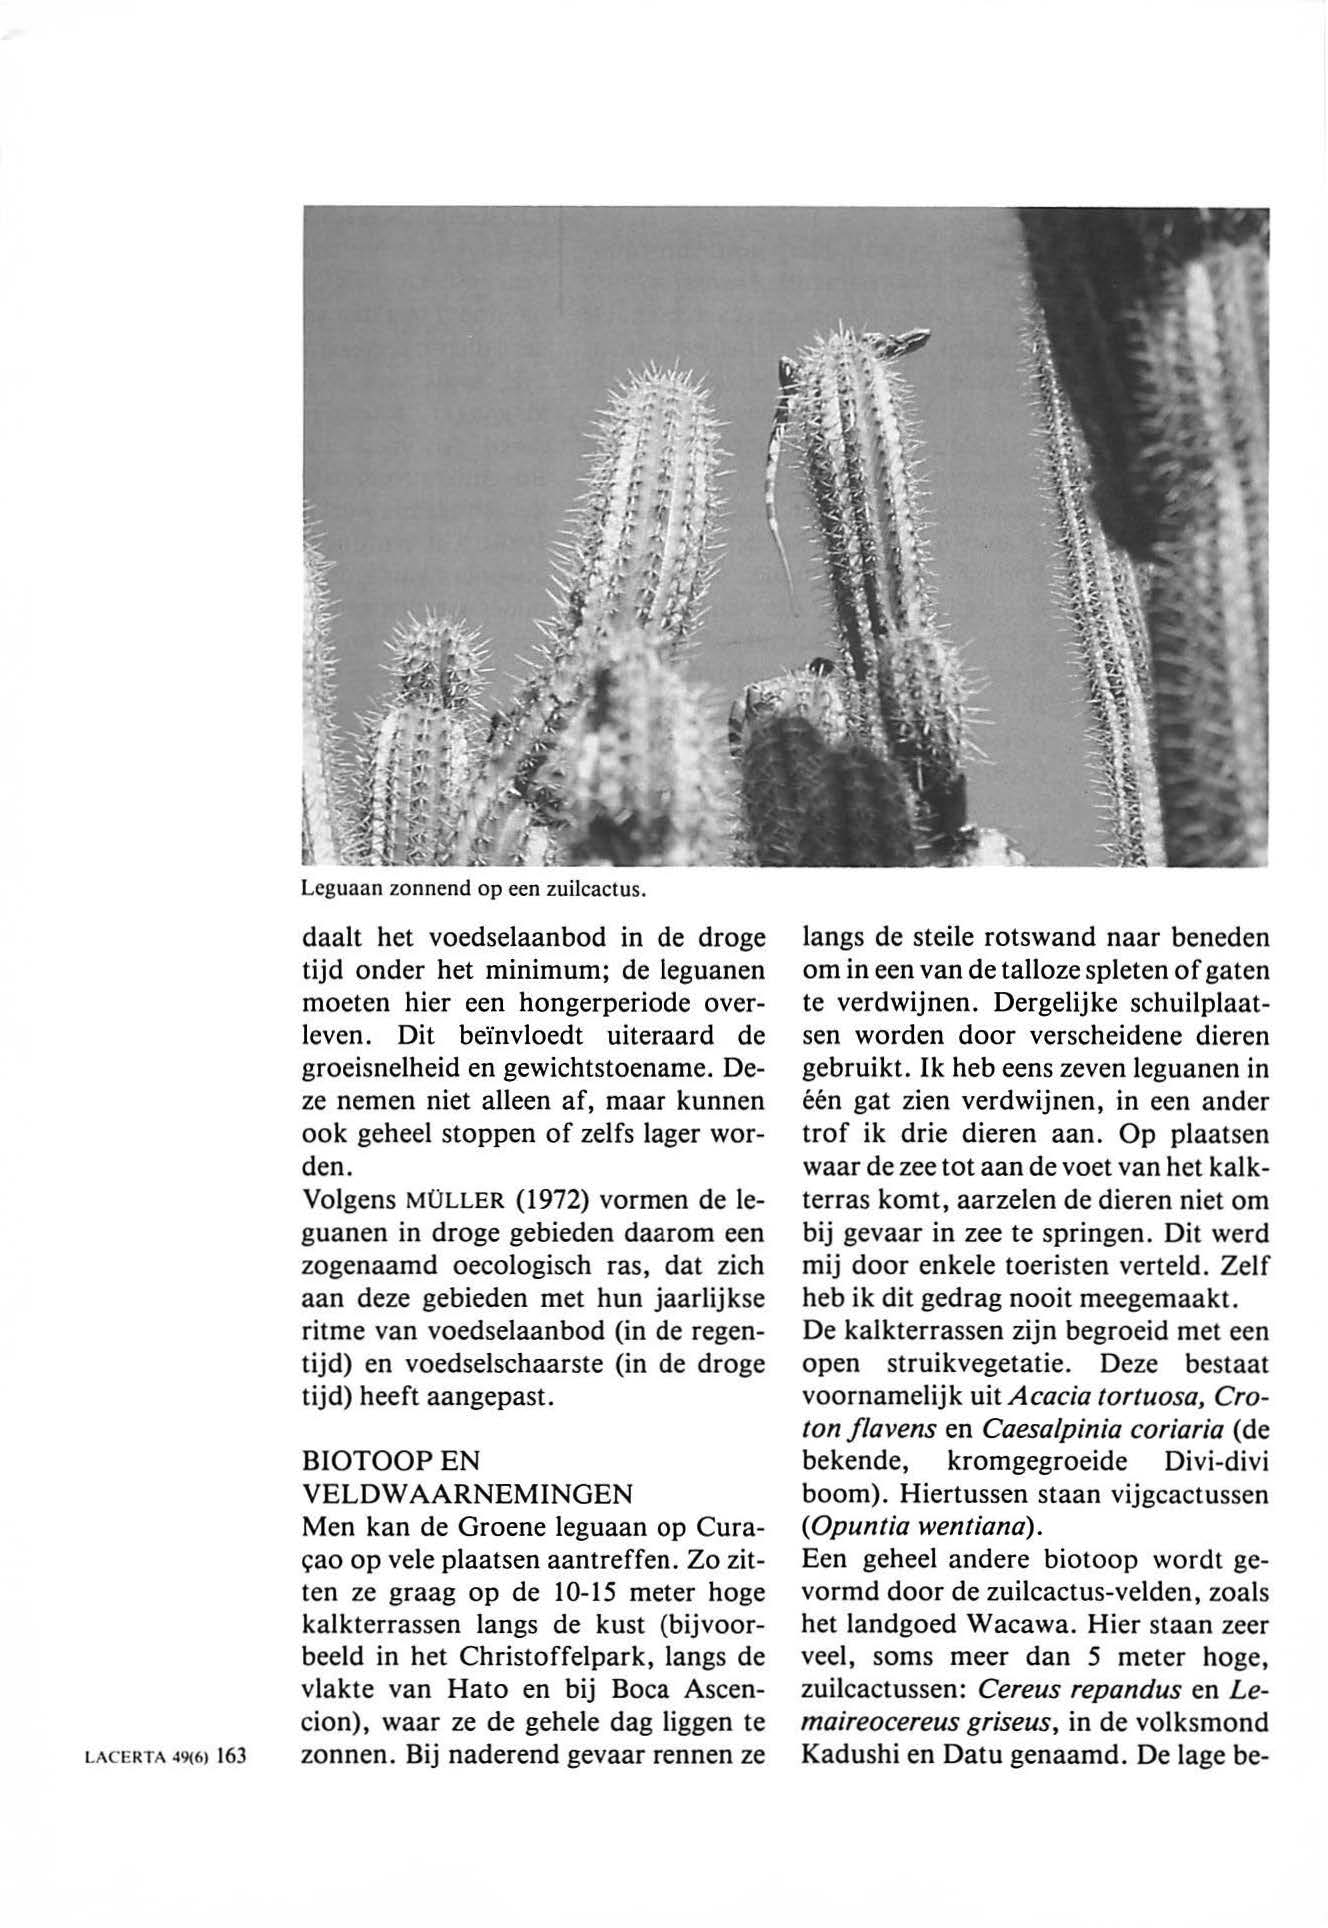 LACERTA 49(6) 163 Leguaan zonnend op een zuilcactus. daalt het voedselaanbod in de droge tijd onder het minimum; de leguanen moeten hier een hongerperiode overleven.